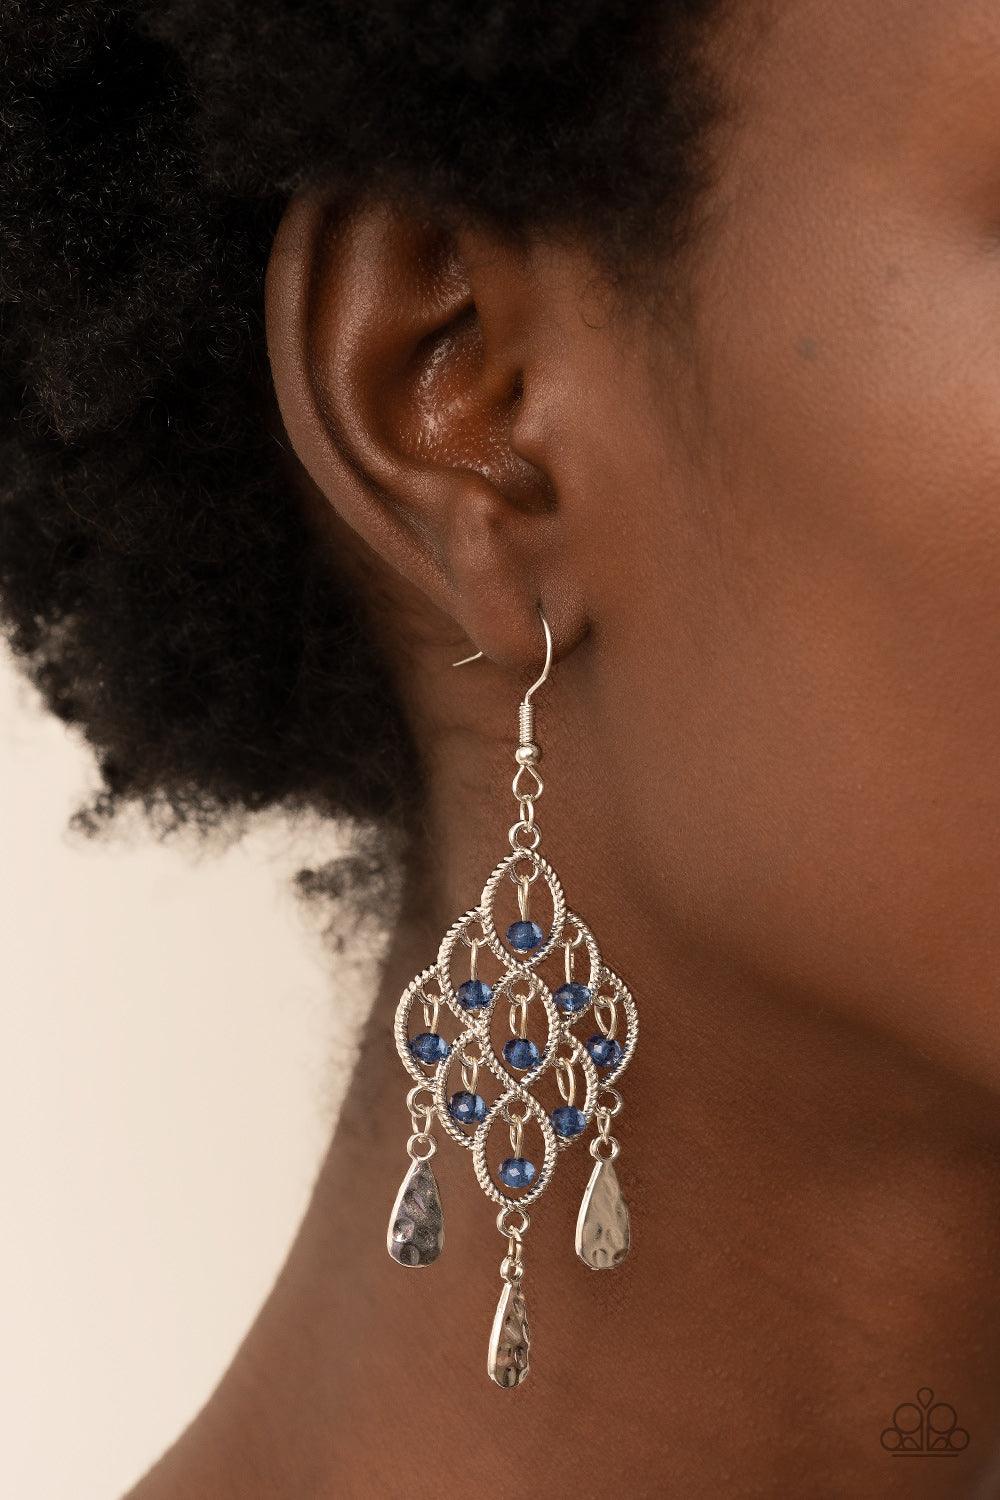 Sentimental Shimmer Blue Earrings - Jewelry by Bretta